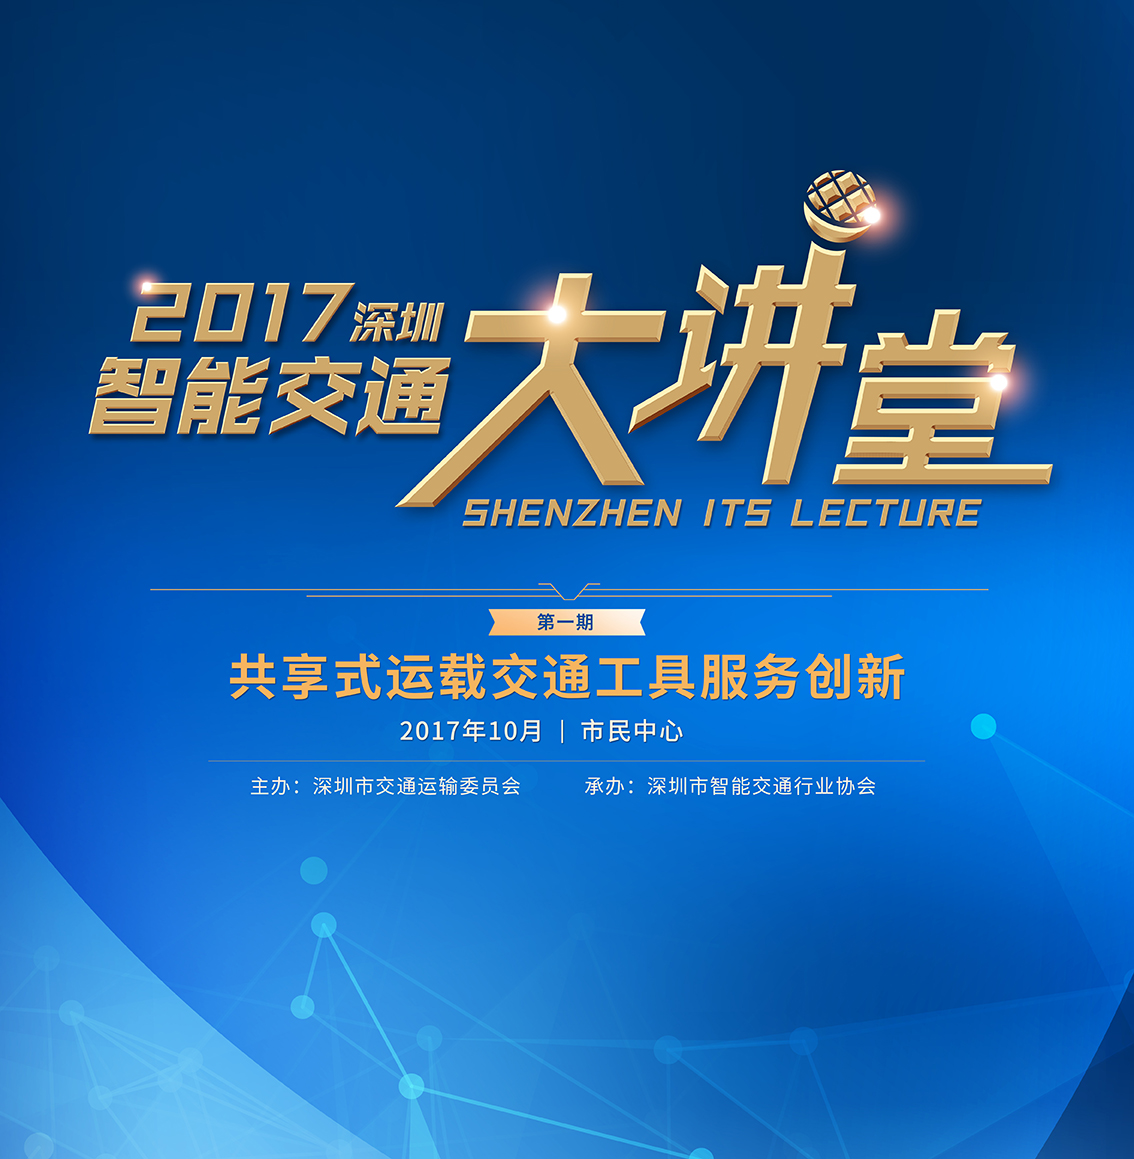 2017深圳智能交通大讲堂第一期本周五开讲